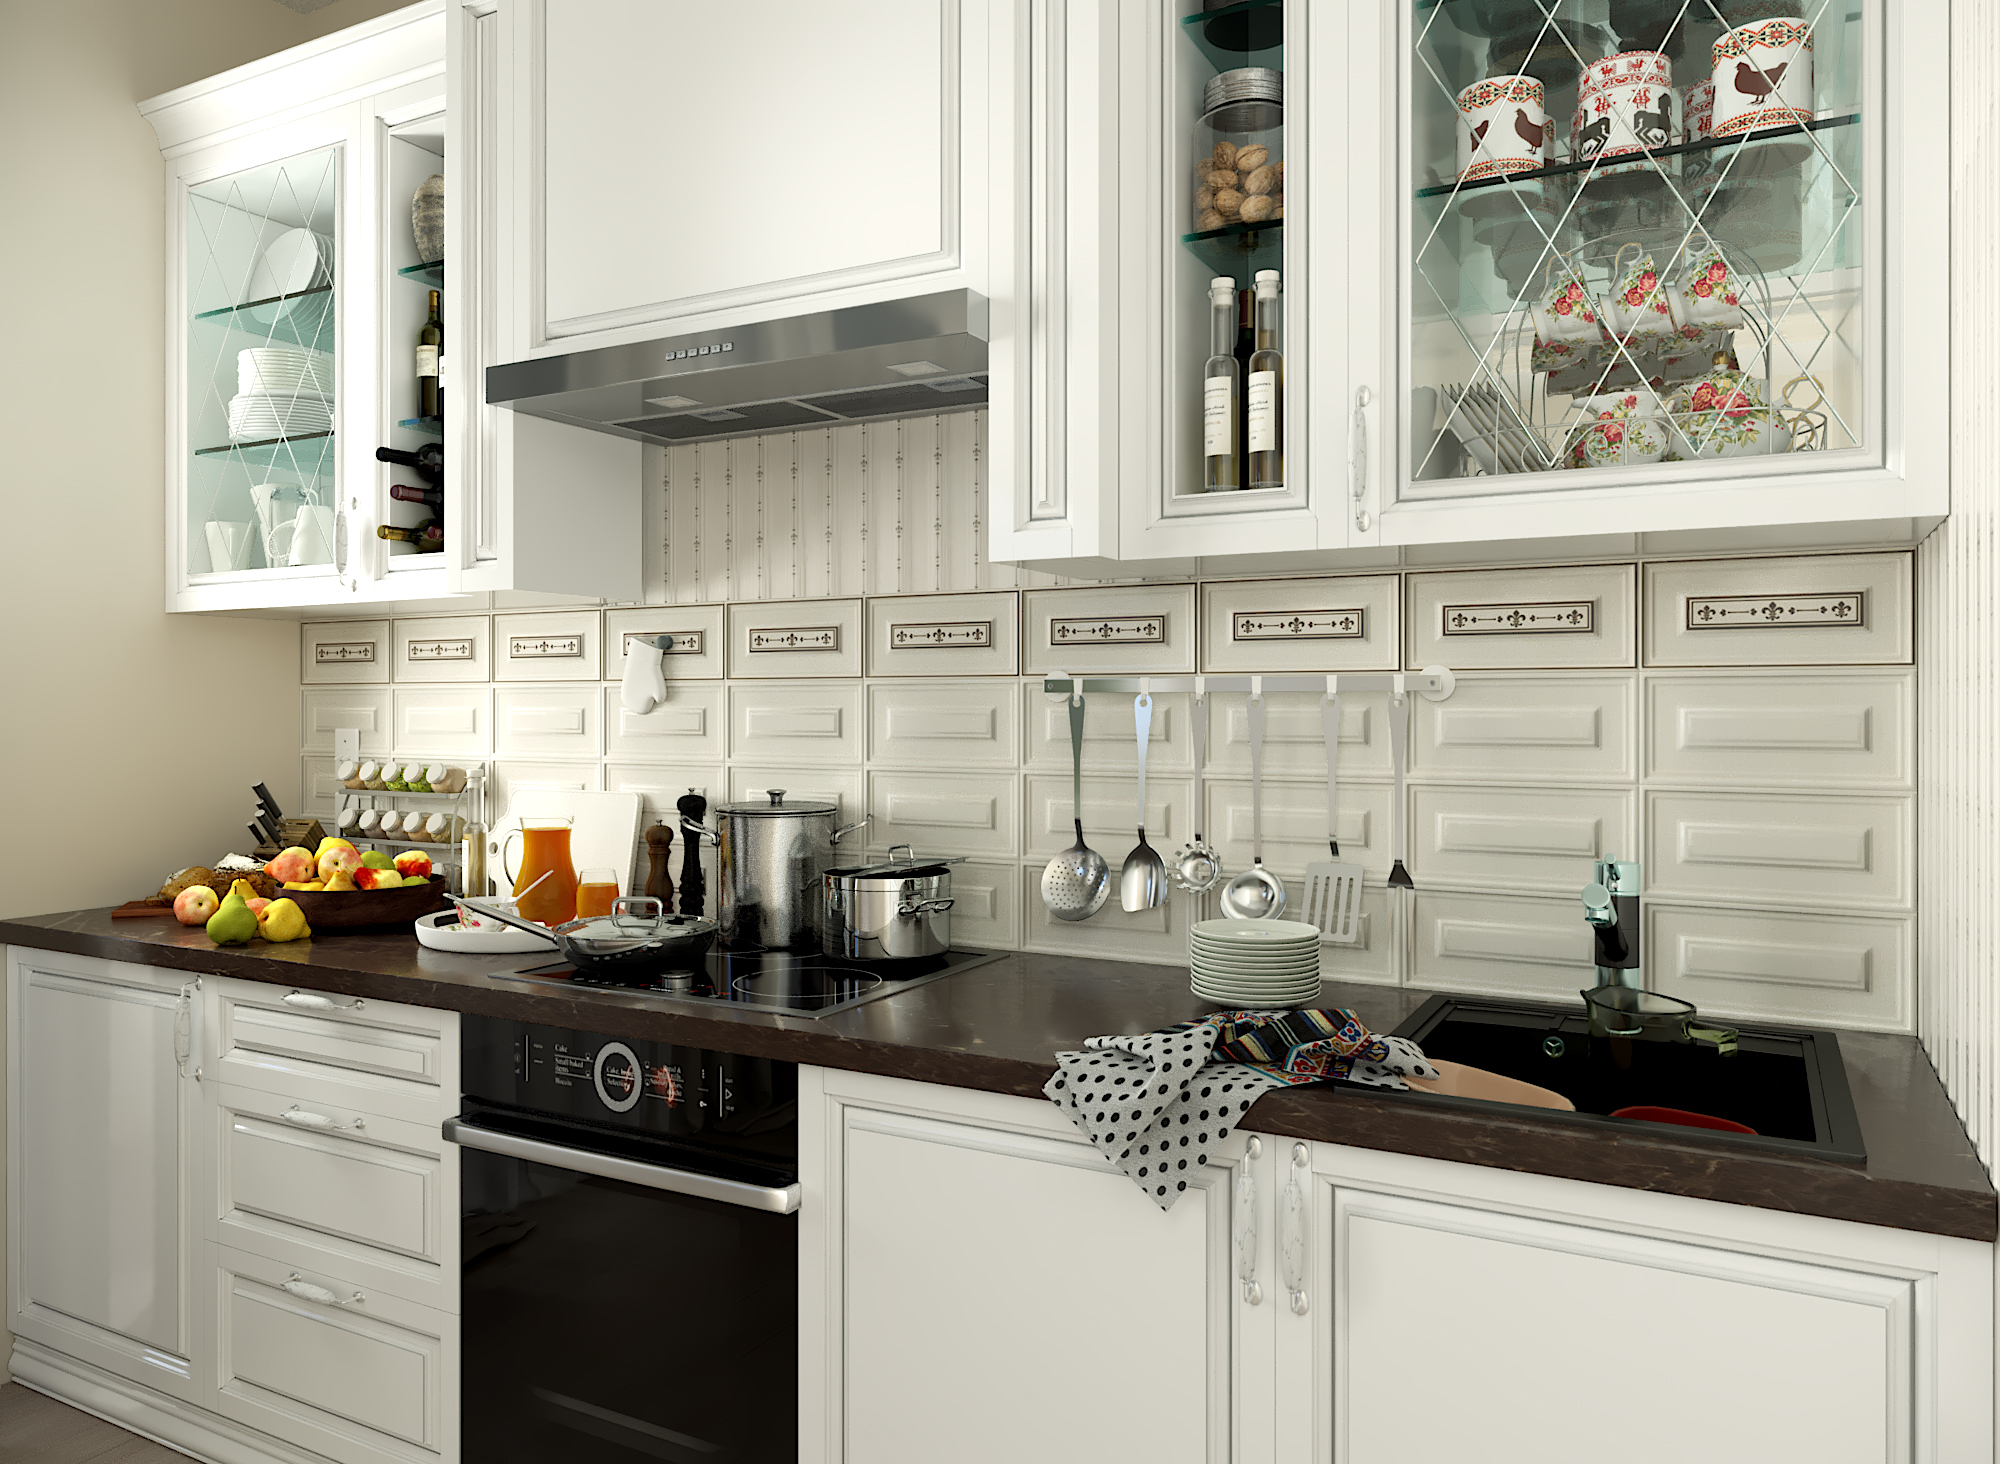 Visualisation 3D de la cuisine dans 3d max corona render image